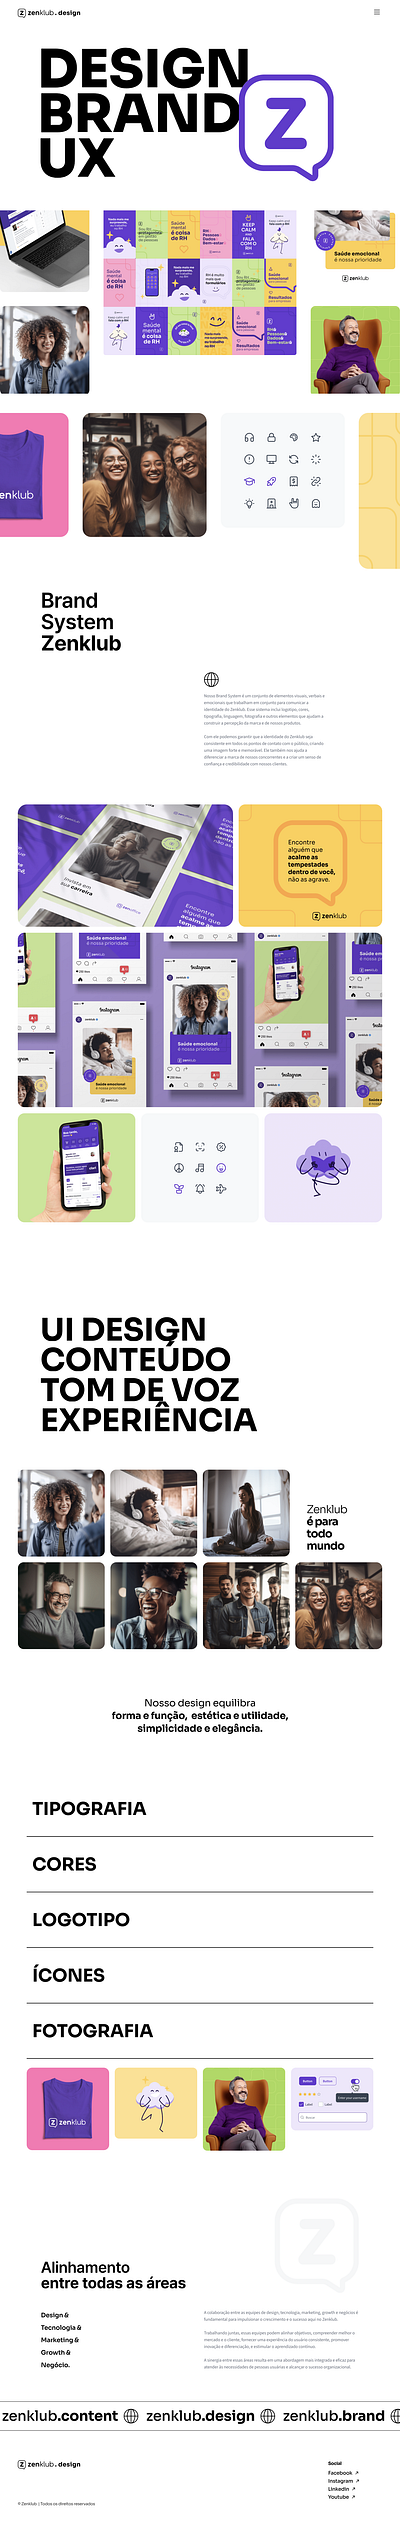 Zenklub's Brand System digital illustration graphic design illus ui website